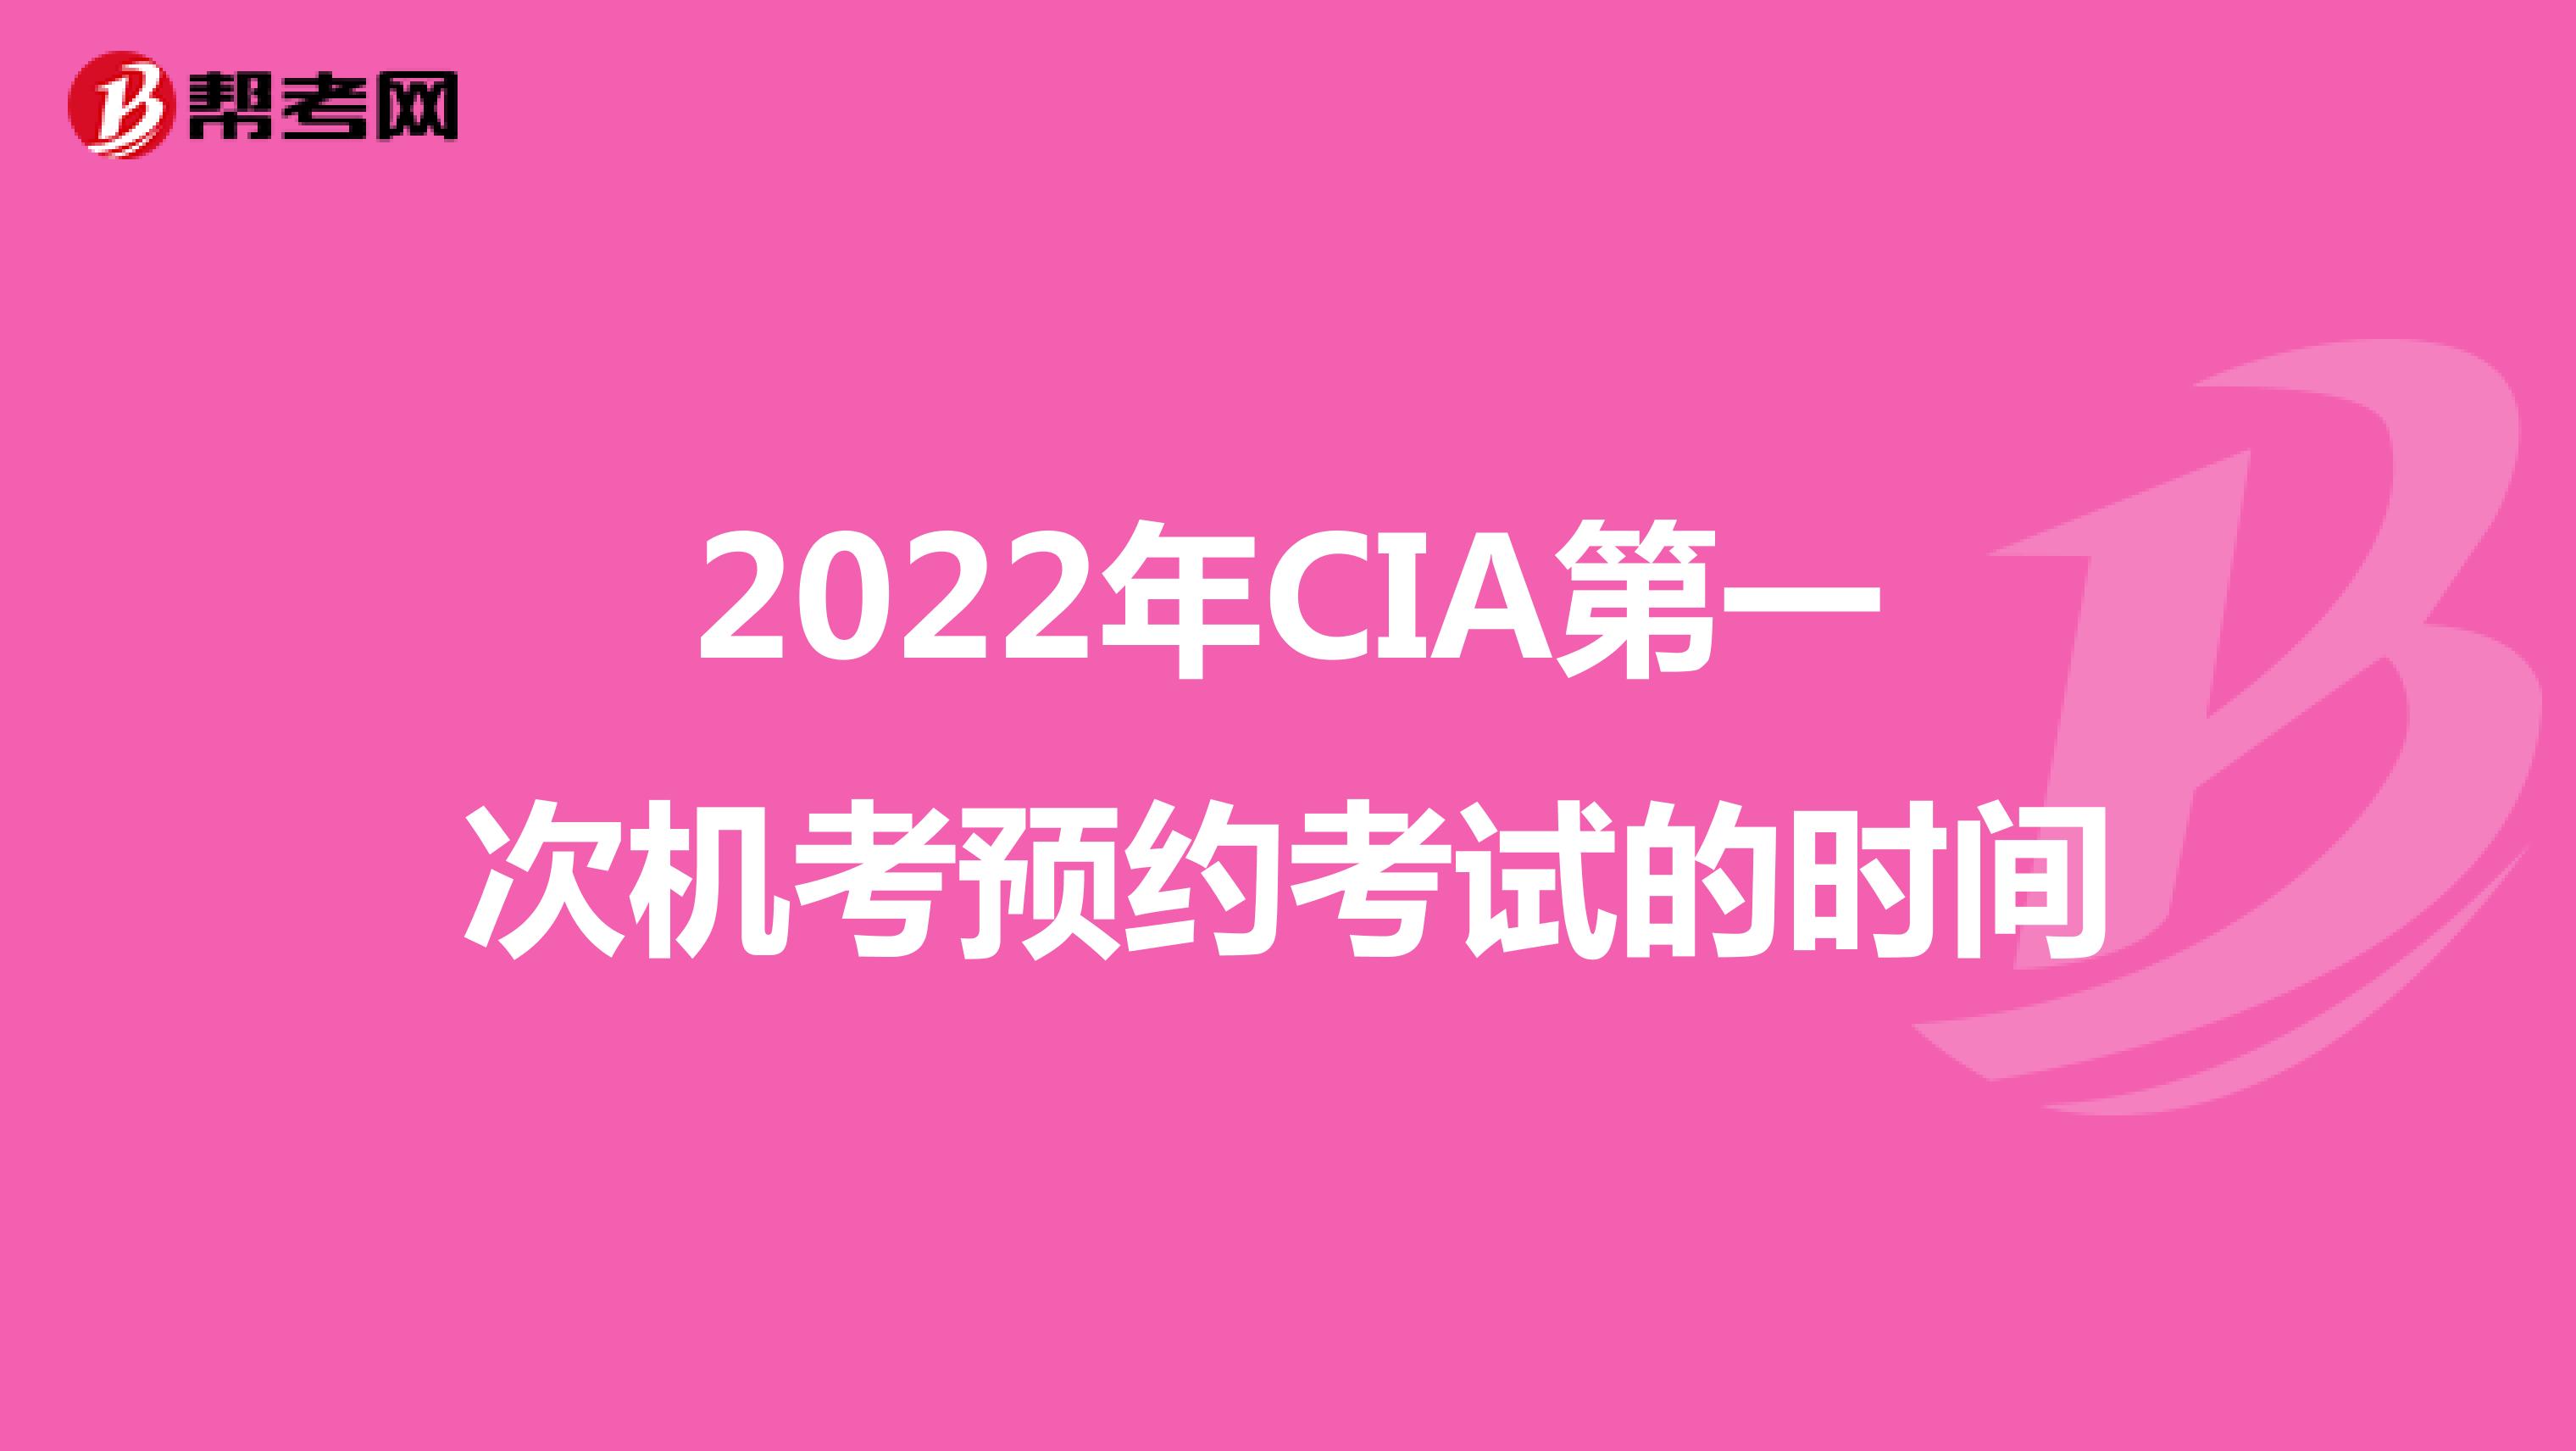 2022年CIA第一次机考预约考试的时间